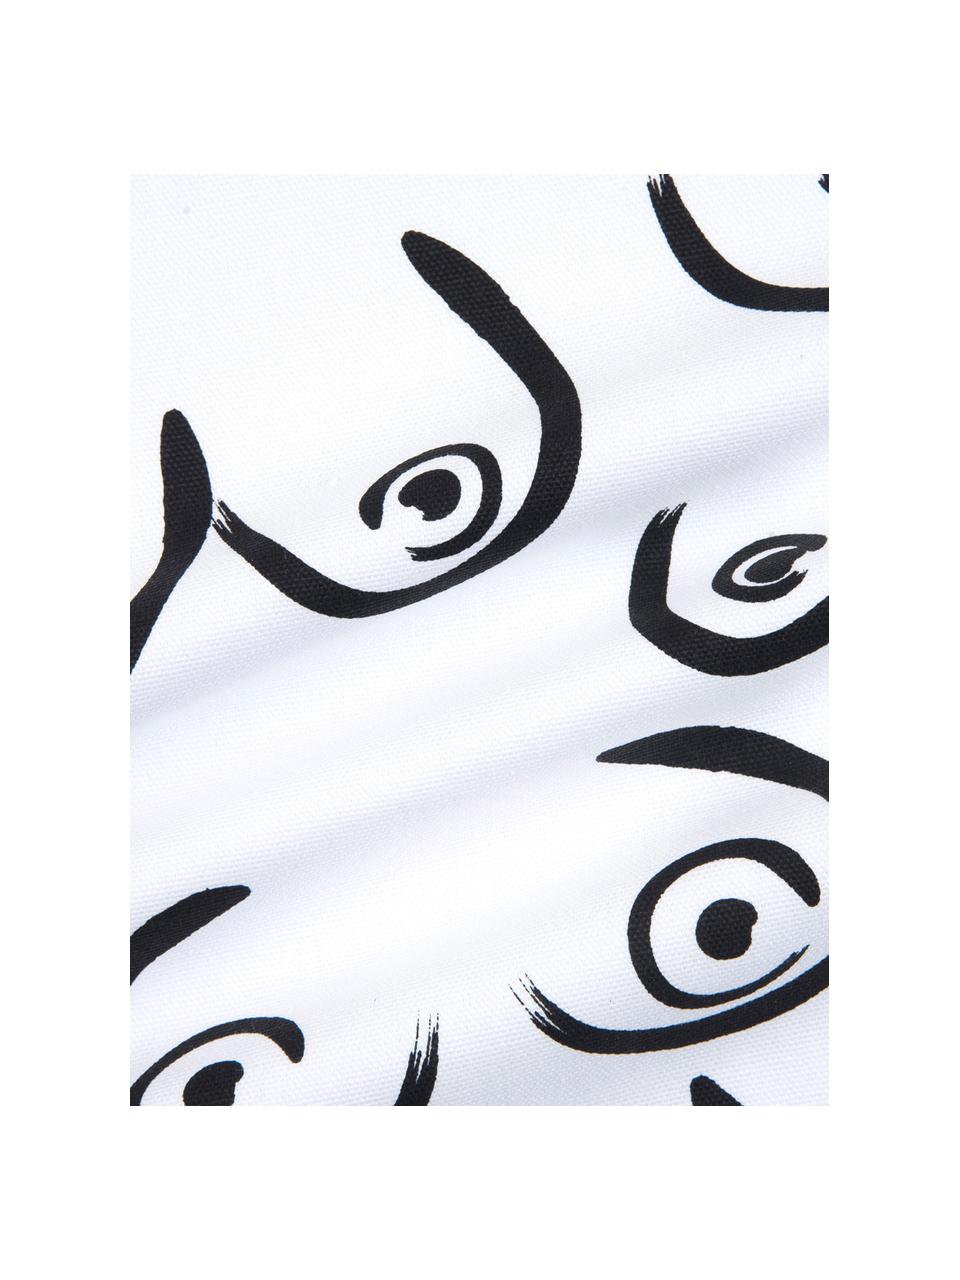 Kussenhoes Boobs met getekende opdruk, 100% katoen, Wit, zwart, 40 x 40 cm